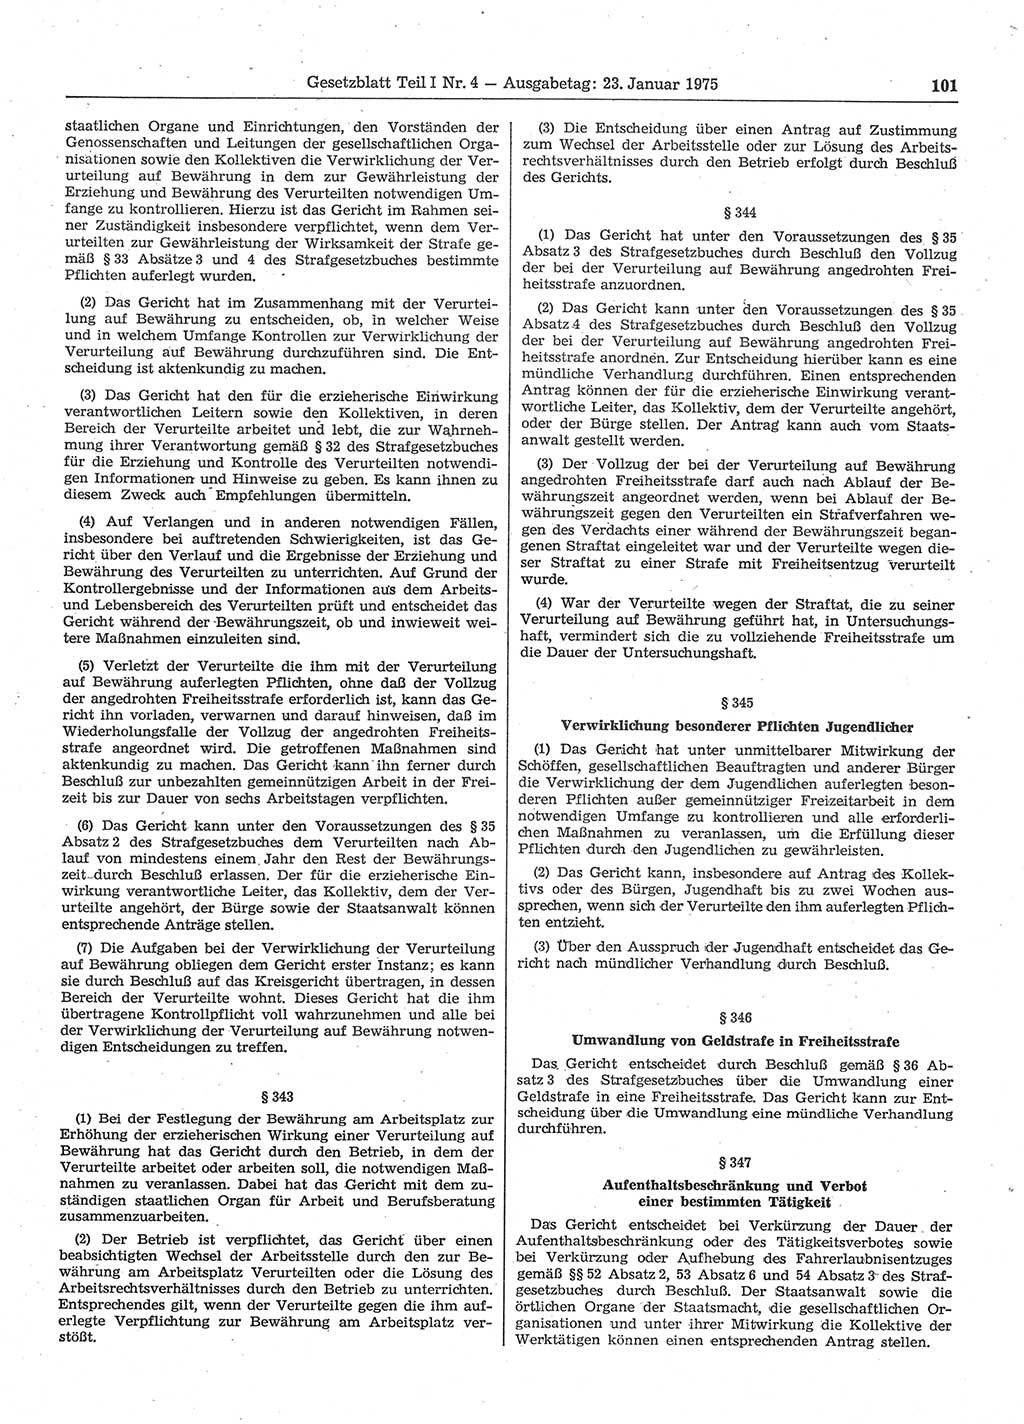 Gesetzblatt (GBl.) der Deutschen Demokratischen Republik (DDR) Teil Ⅰ 1975, Seite 101 (GBl. DDR Ⅰ 1975, S. 101)